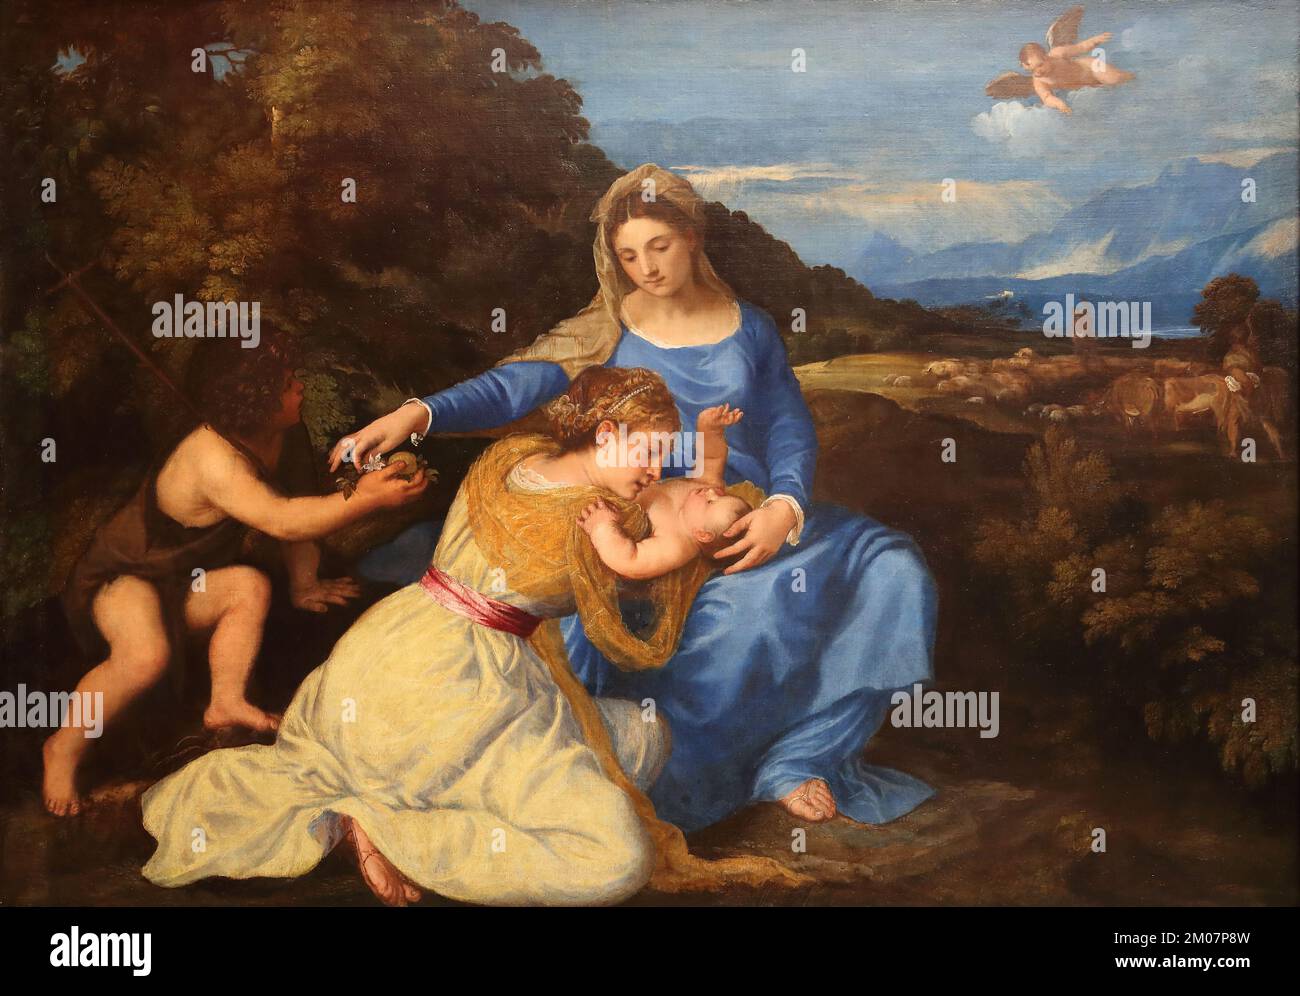 La Madonna Aldobrandini de Titien, peintre italien de la Renaissance, à la National Gallery, Londres, Royaume-Uni Banque D'Images